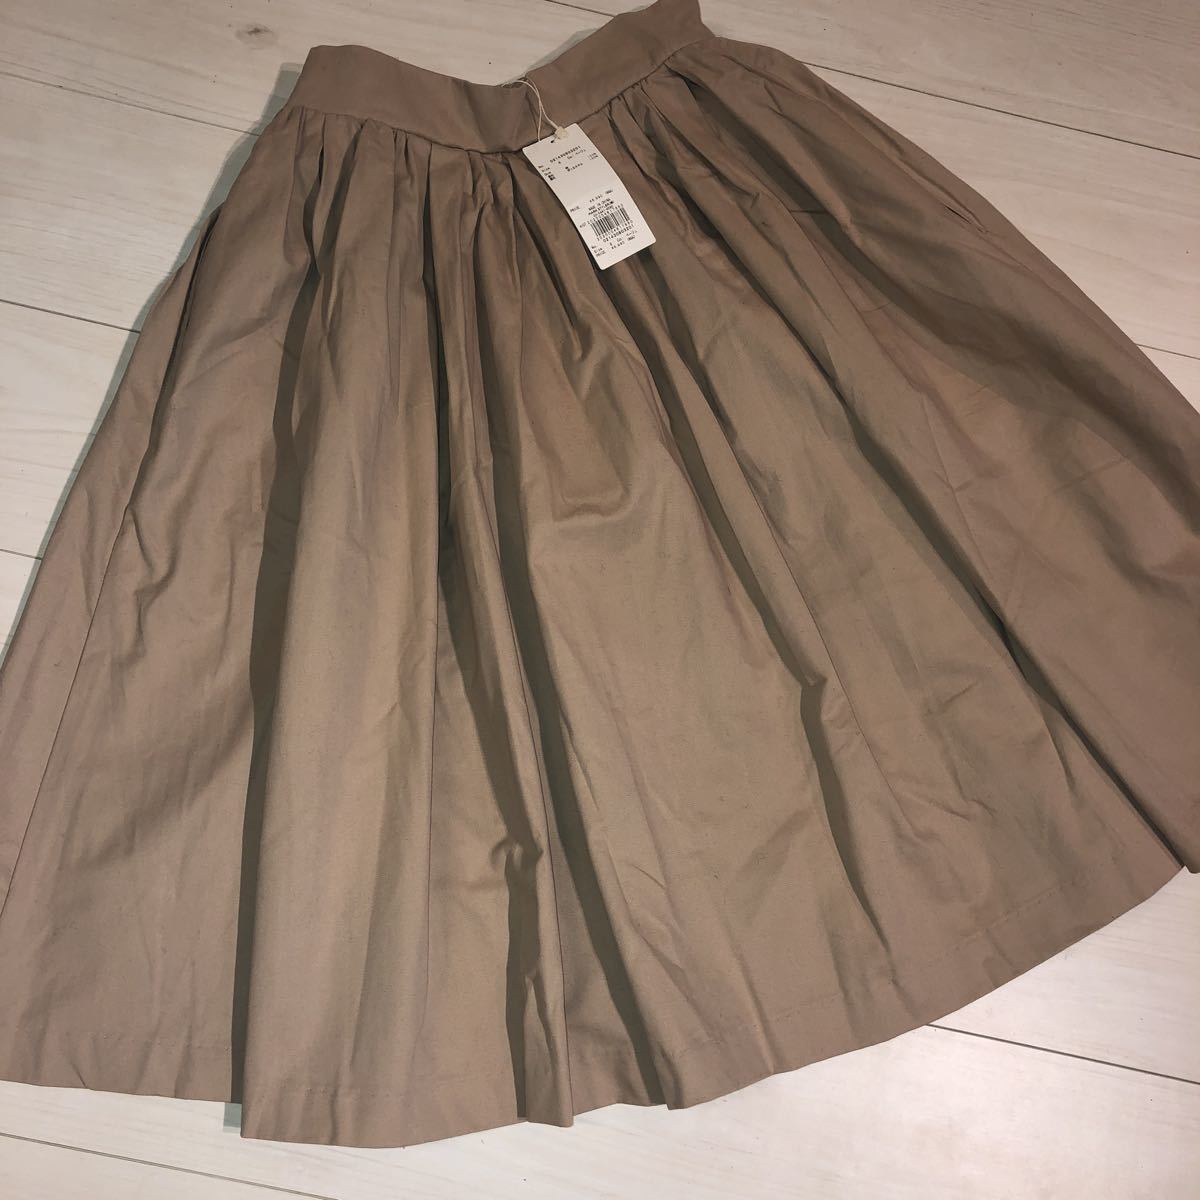  Dazzlin mi leak height skirt dazzlin 021430803201 beige S flair skirt gathered skirt 